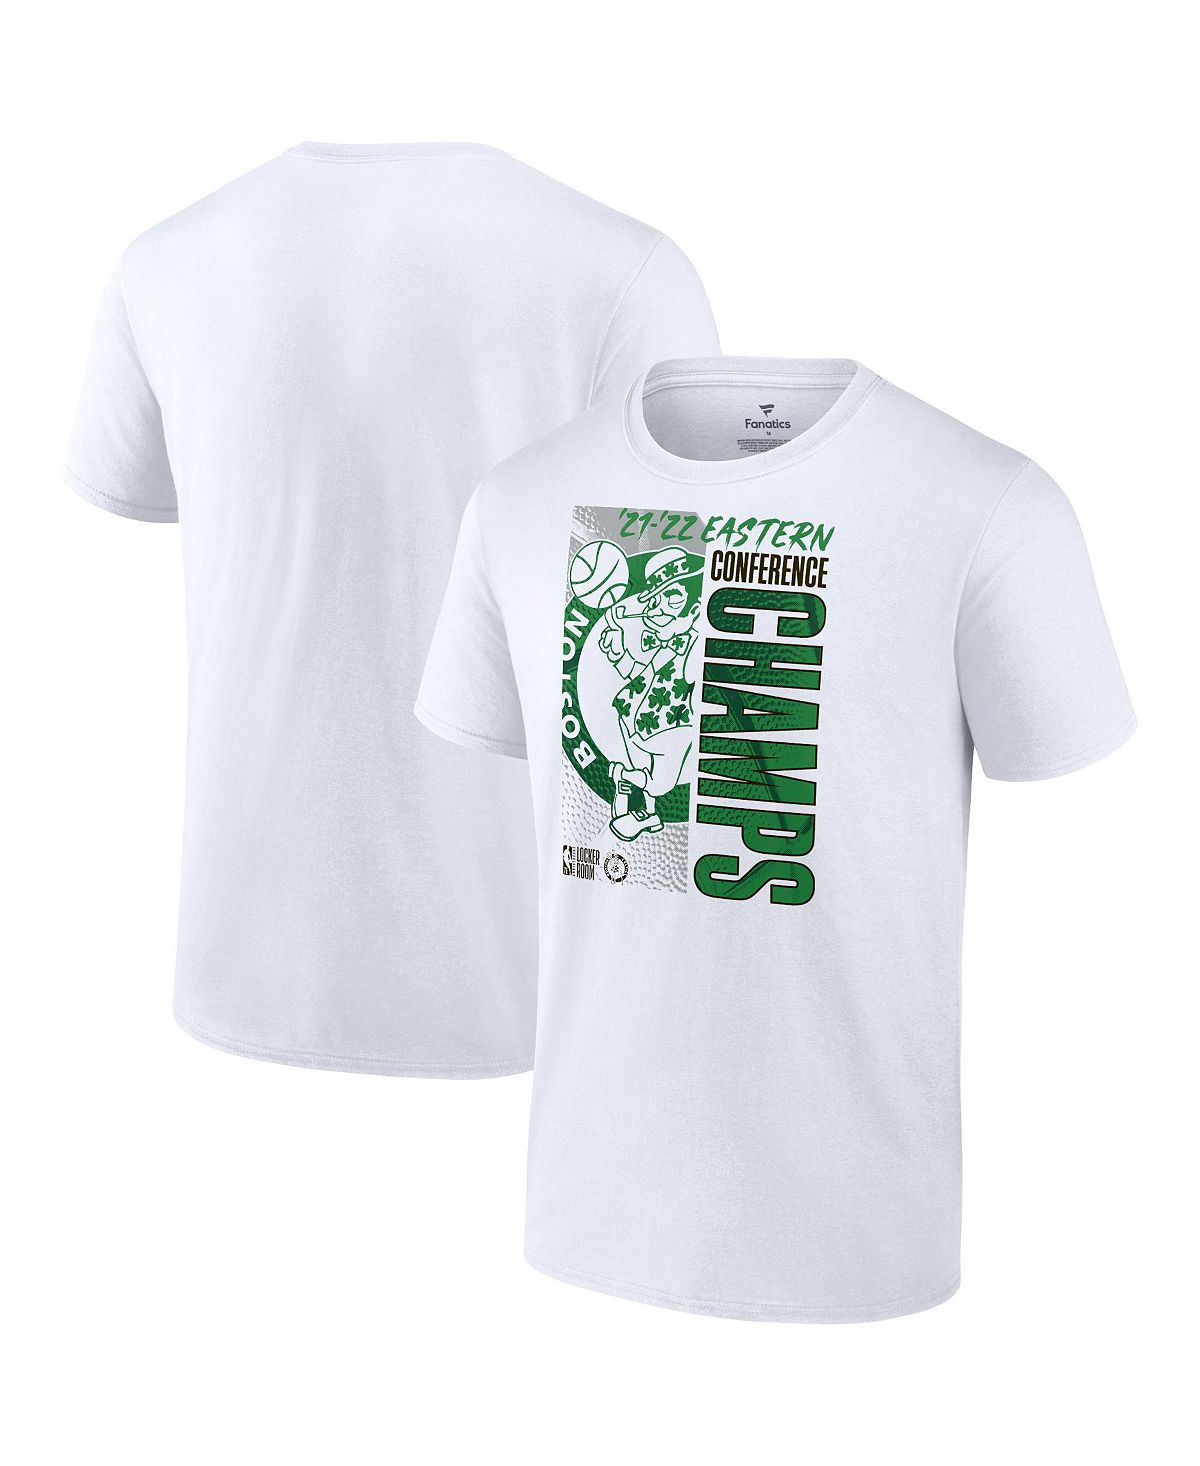 Мужская футболка в раздевалке чемпионов восточной конференции 2022 года с логотипом boston celtics Fanatics, белый